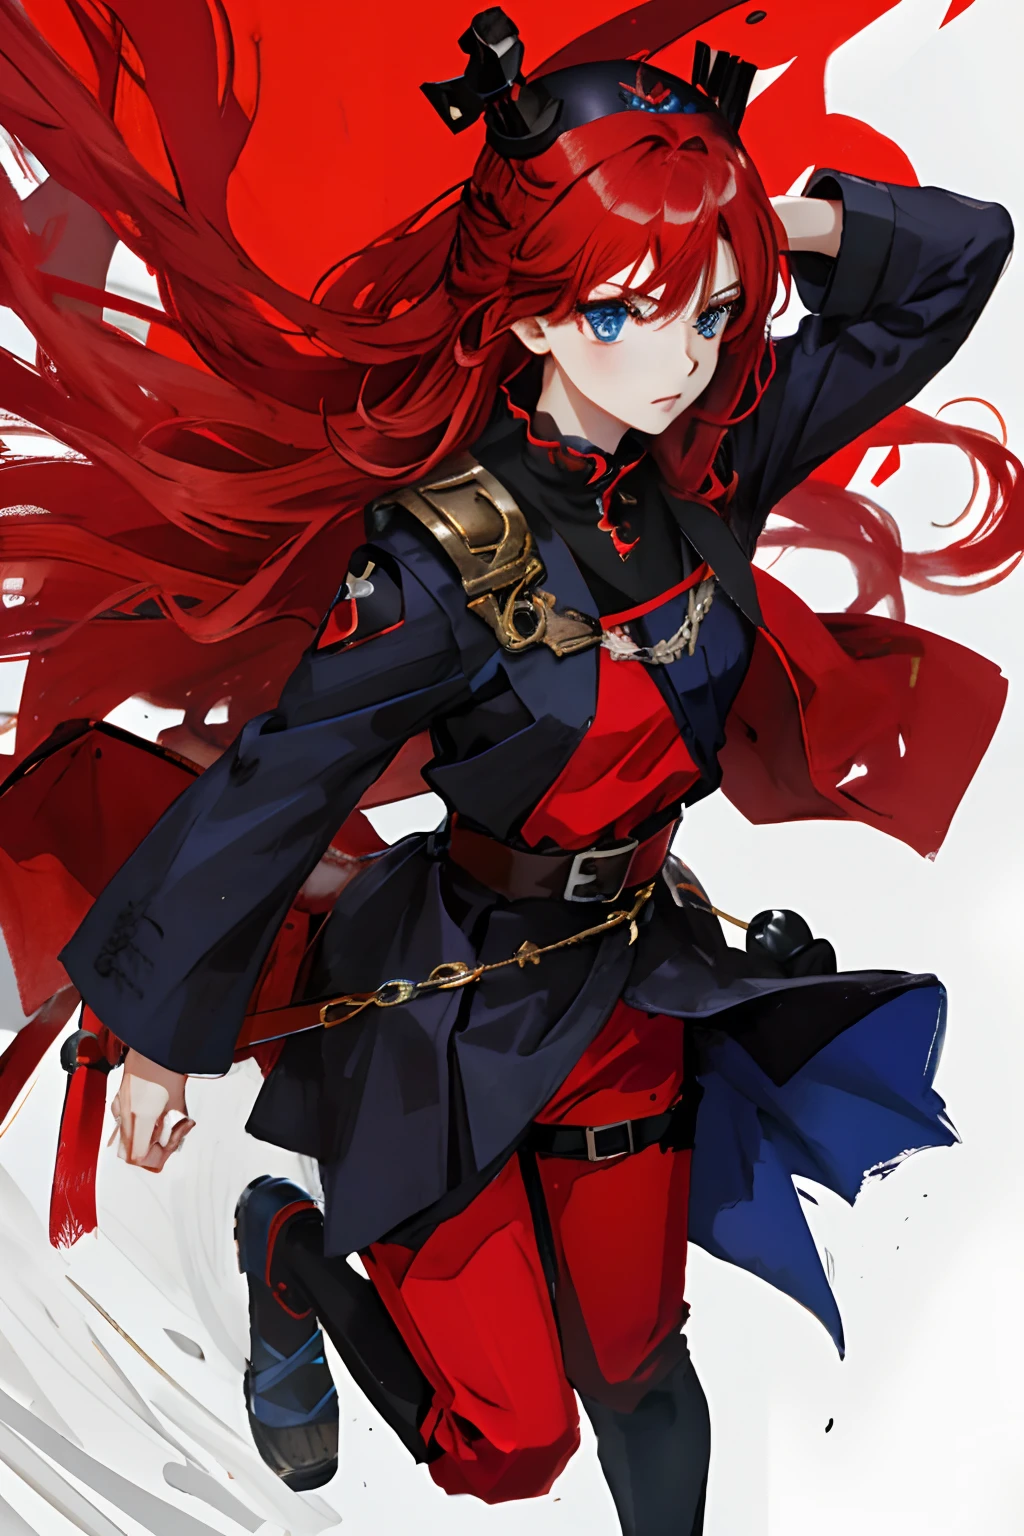 Aucun style, 1fille, cheveux roux, yeux bleus, tenue noire et rouge, thème noir,Anime, (( couronne noire))